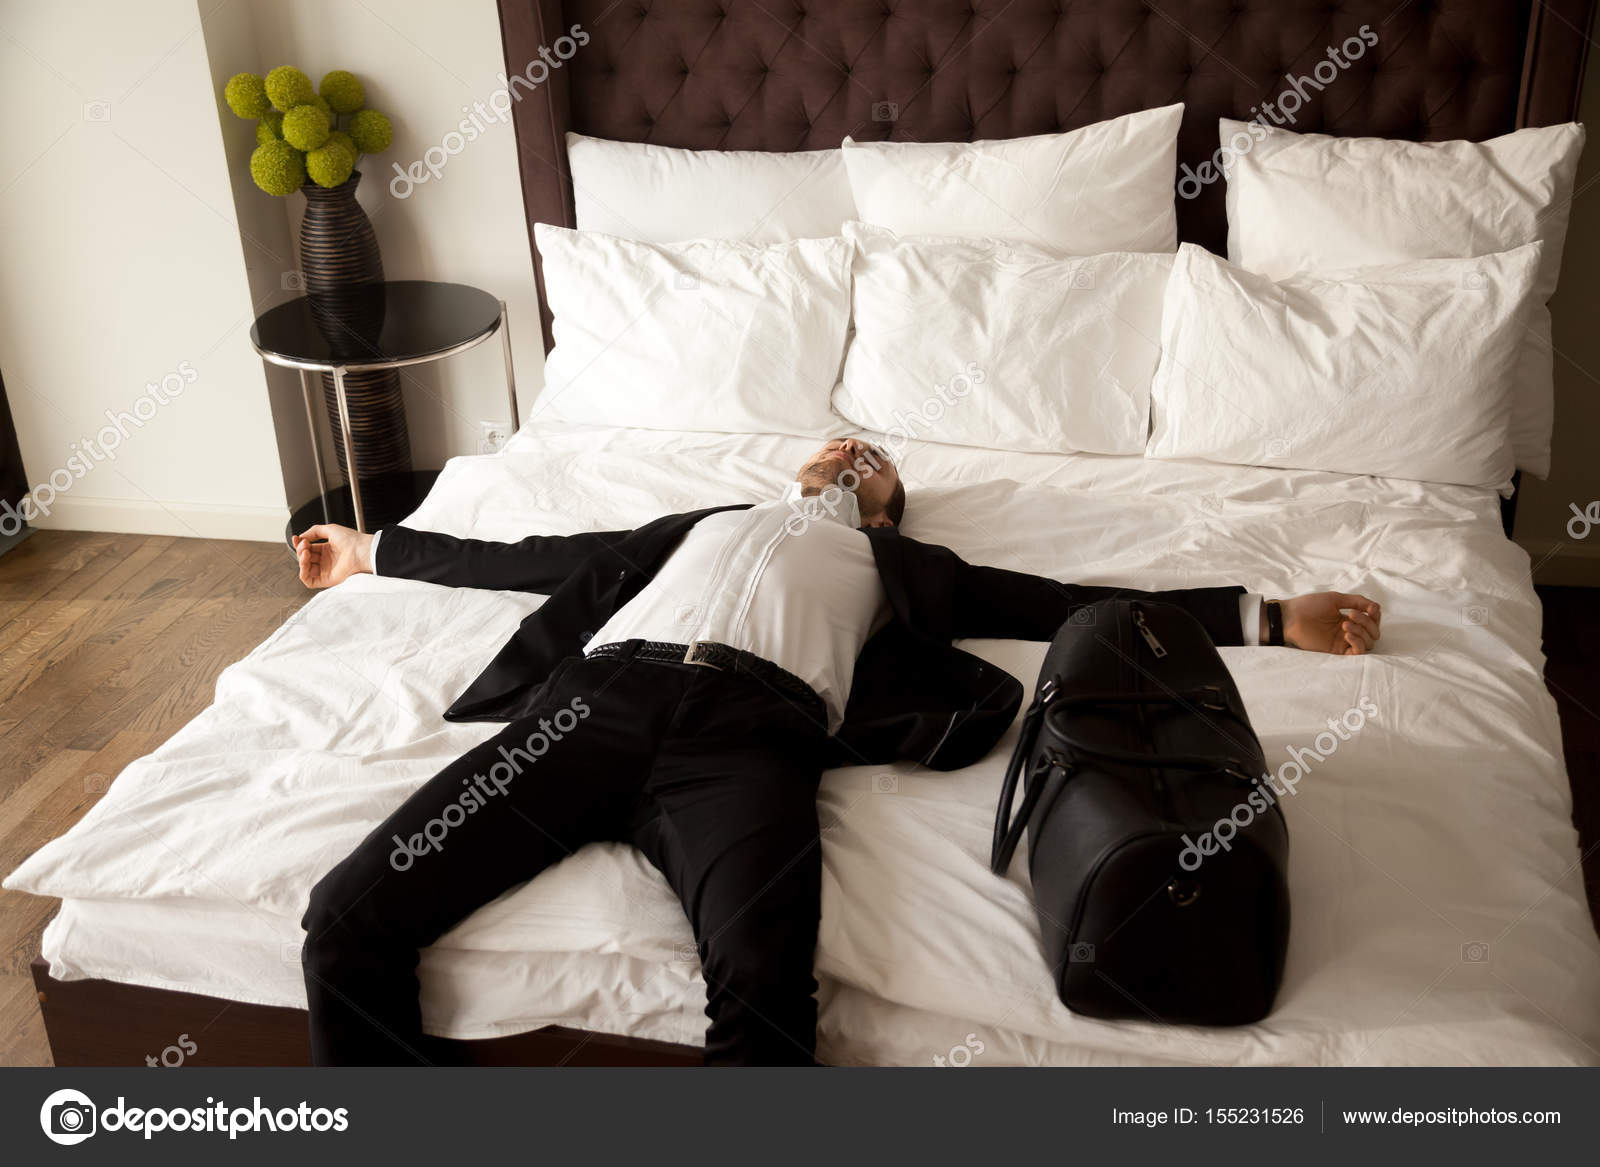 В отель с бывшим мужчиной. Парень в кровати. Парень в костюме на кровати. Мужчина в костюме лежит.